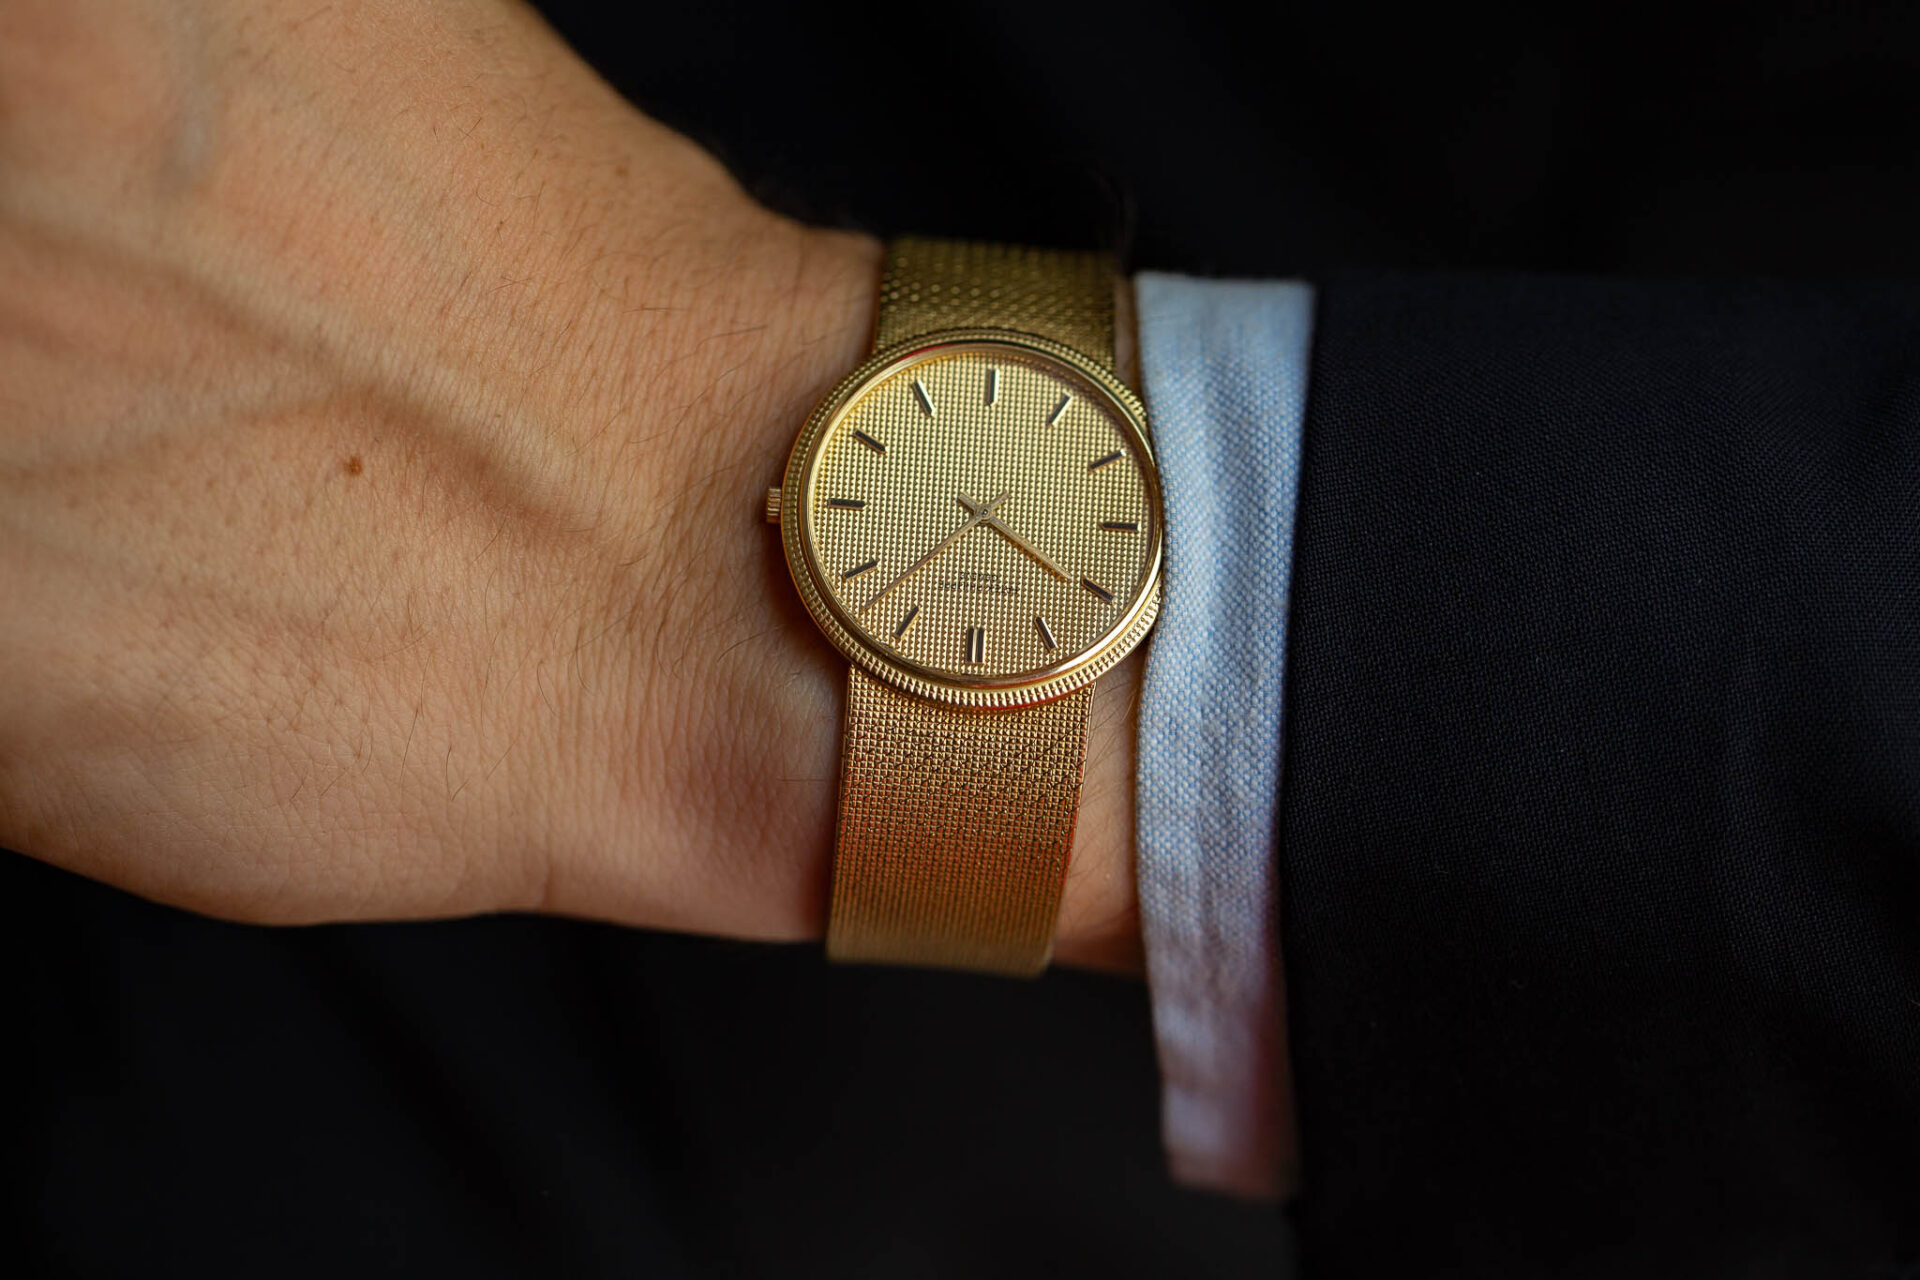 Patek Philippe - Alexandre Landre - Sélection de montres de la vente Horlogerie rue de Bourgogne #11